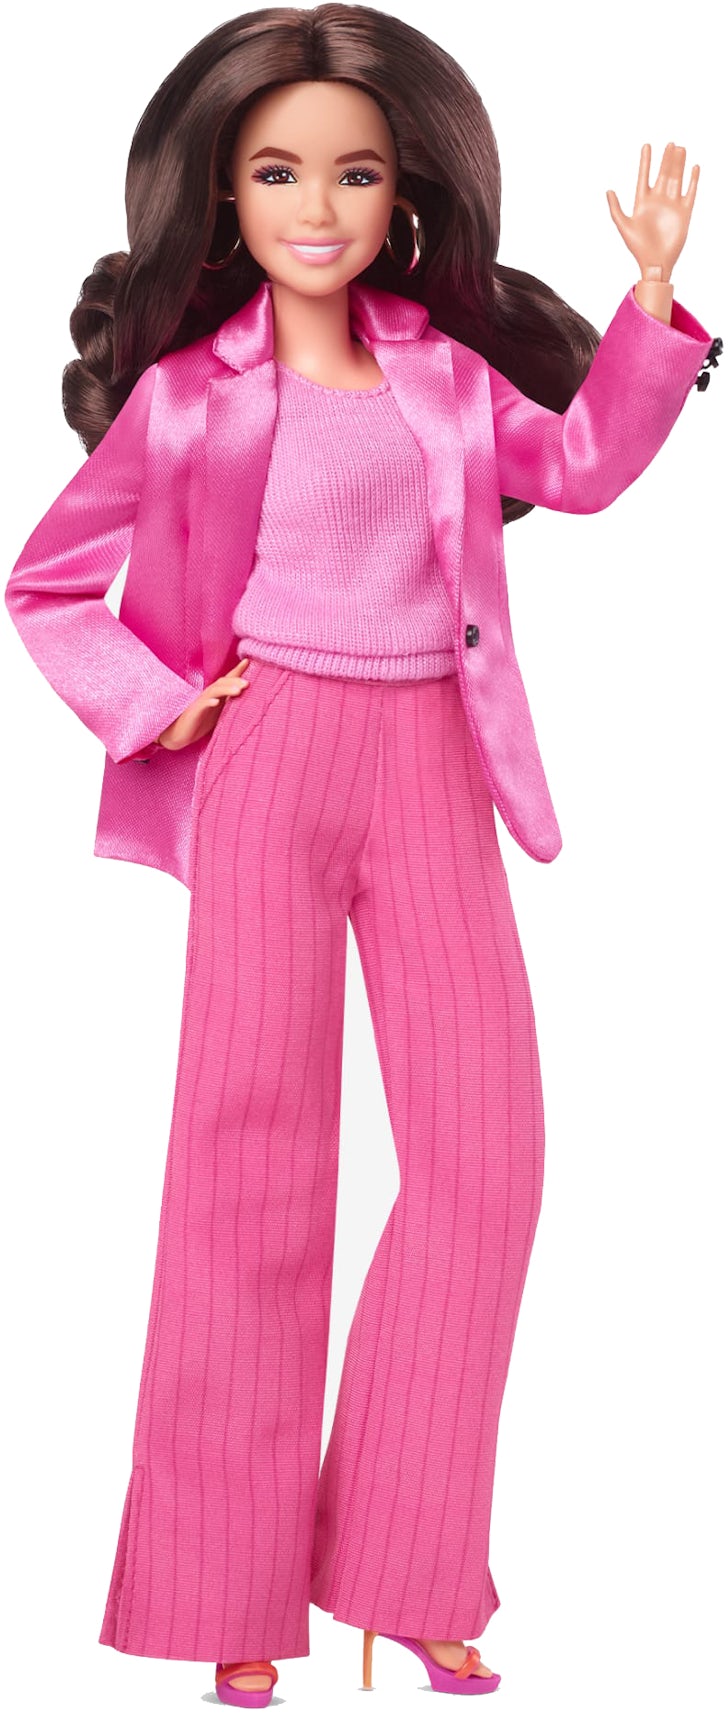 Barbie Signature Gloria Estefan Collector Doll